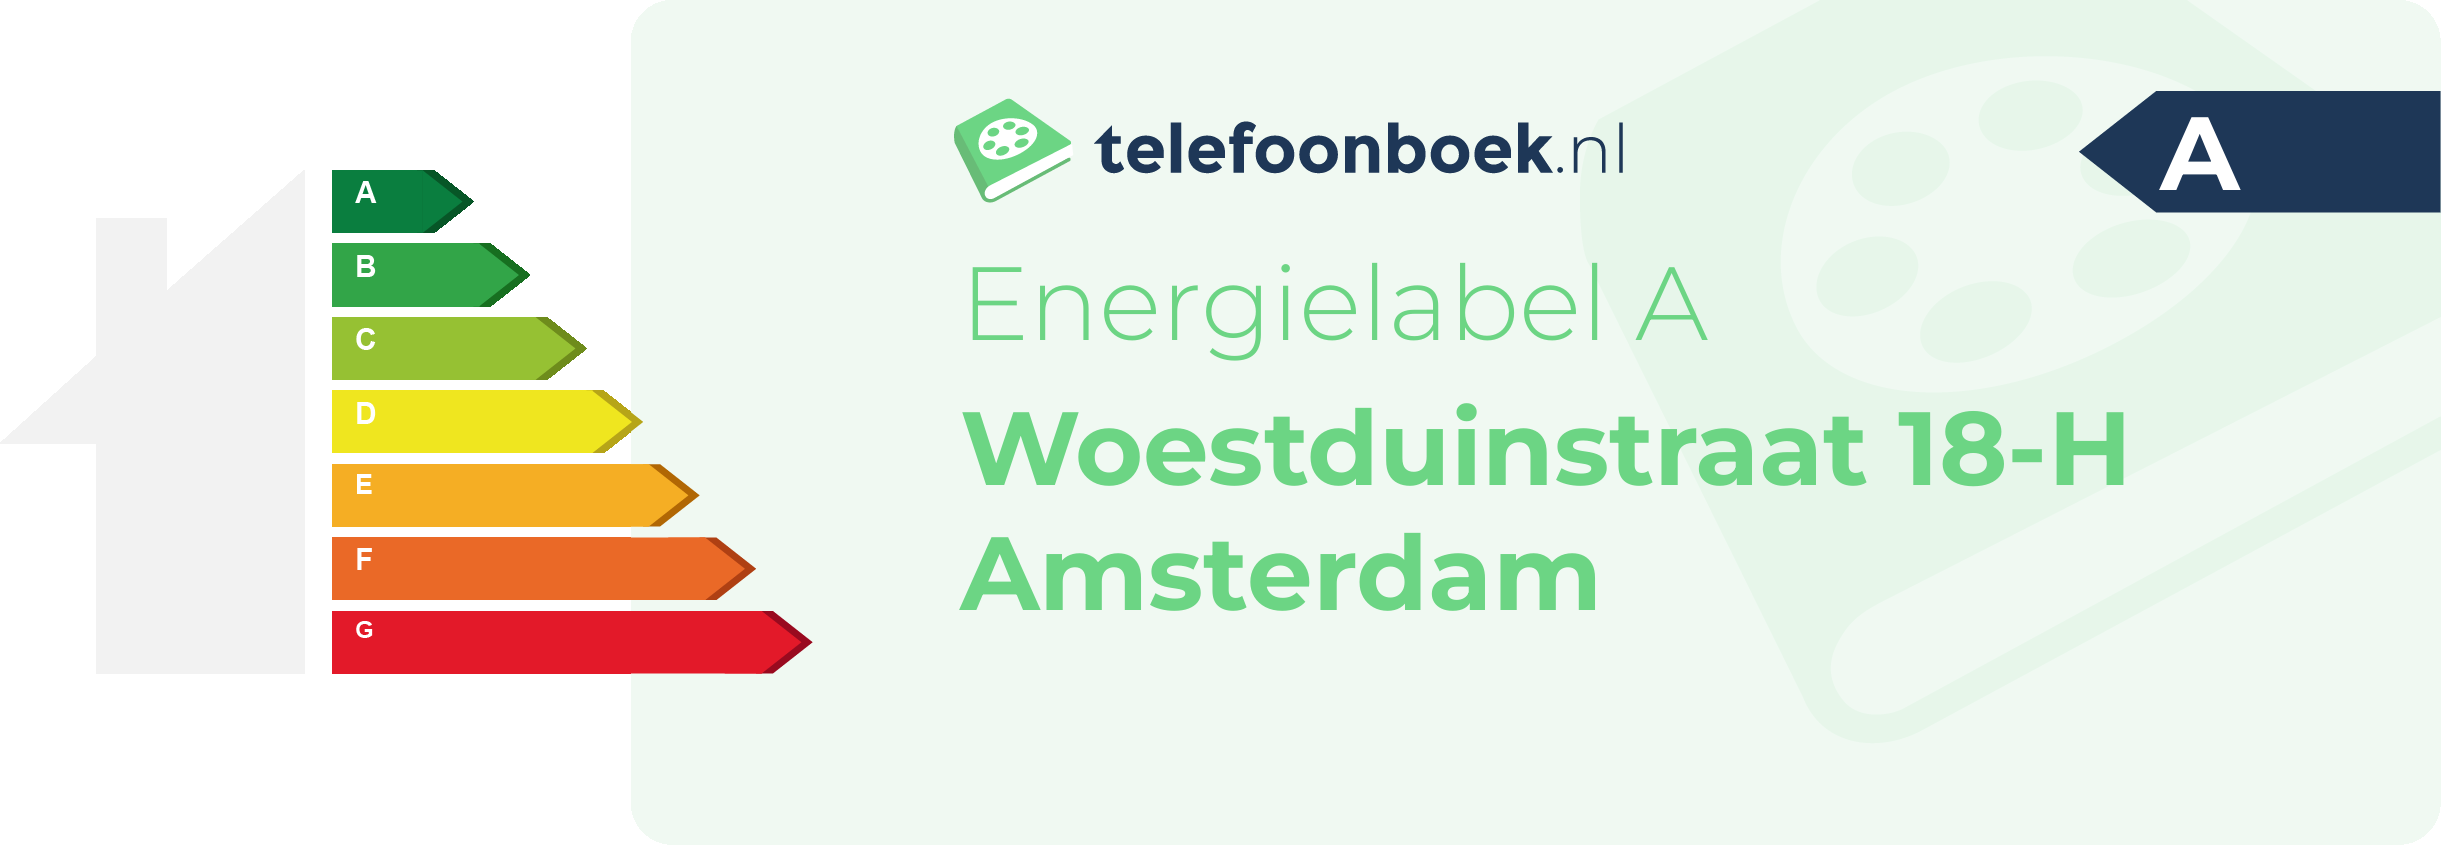 Energielabel Woestduinstraat 18-H Amsterdam